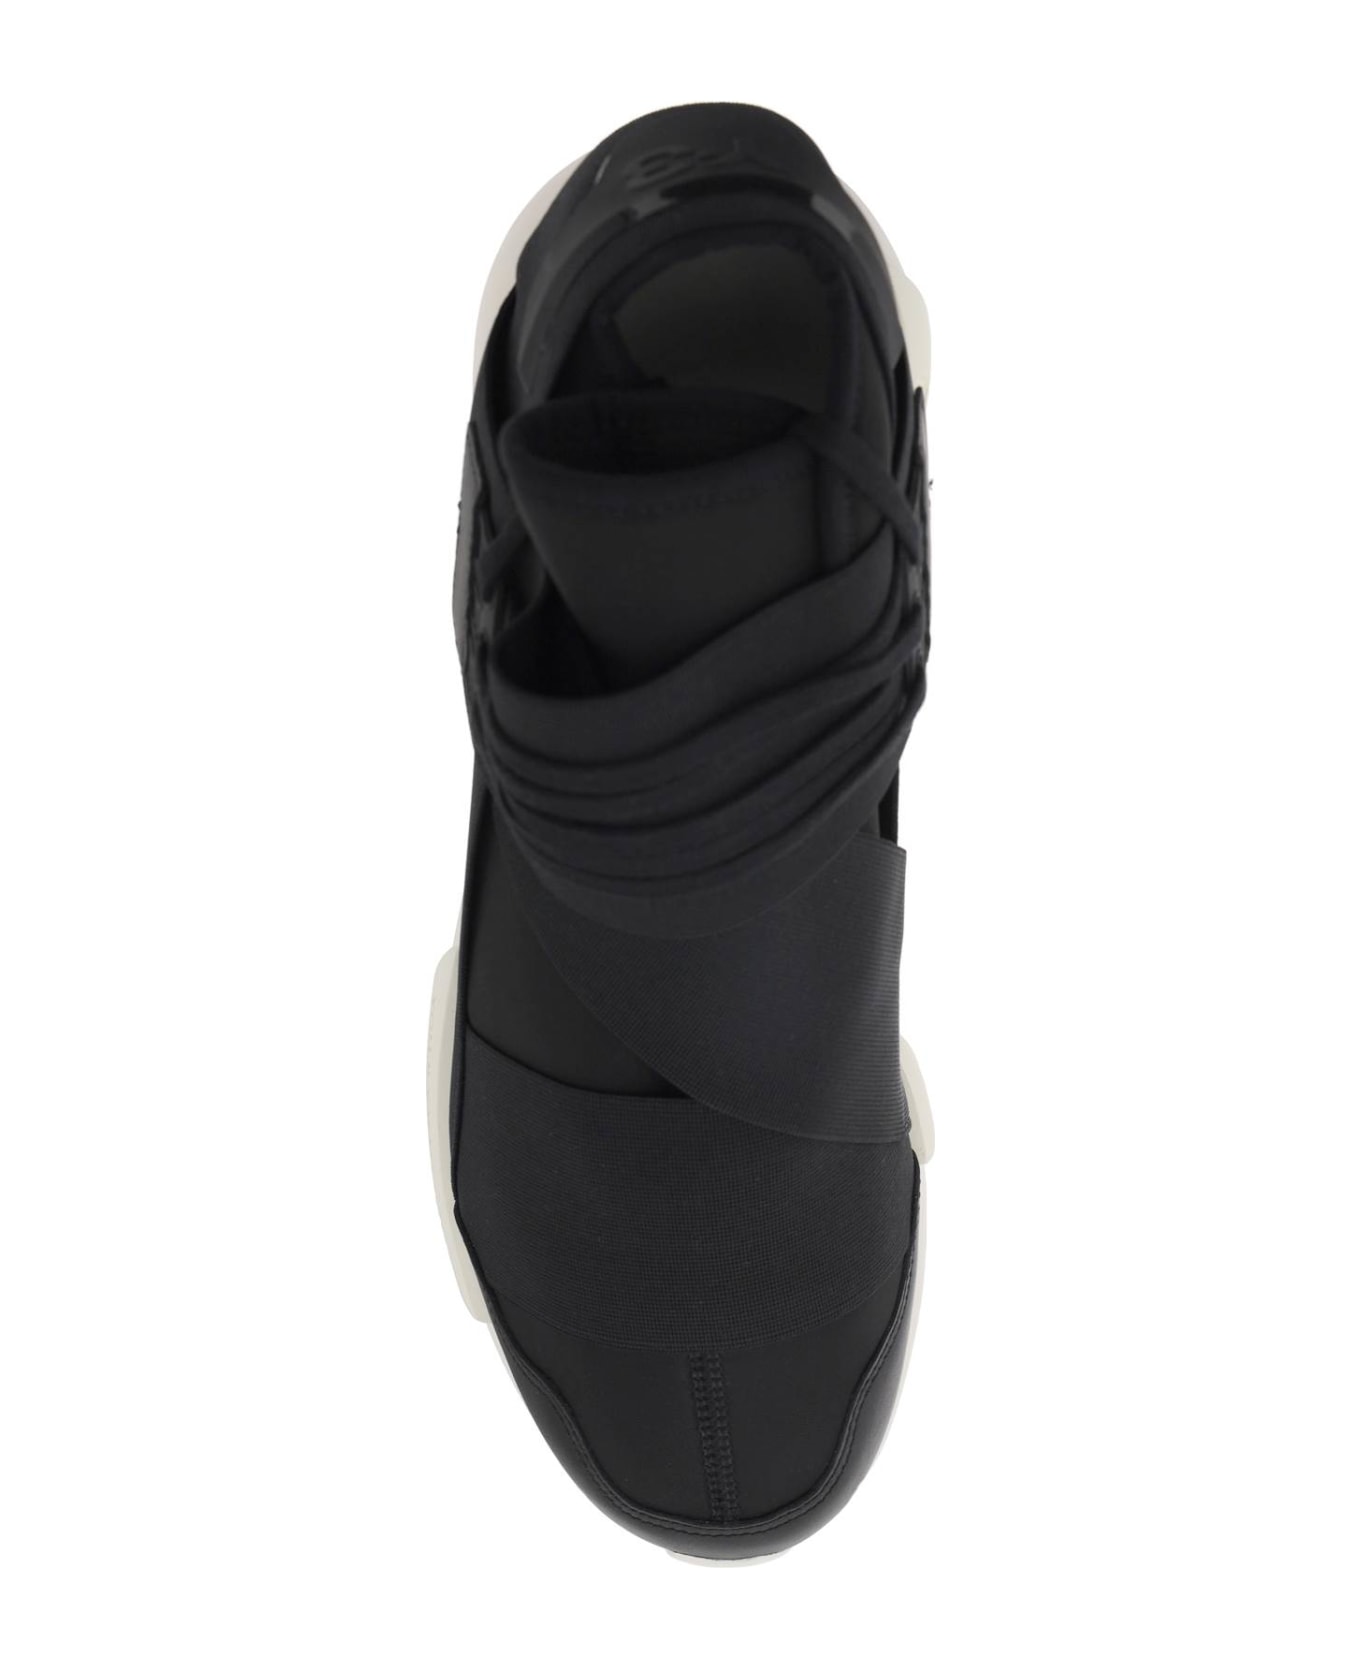 Y-3 Low Qasa Sneakers - BLACKBLACKOWHITE